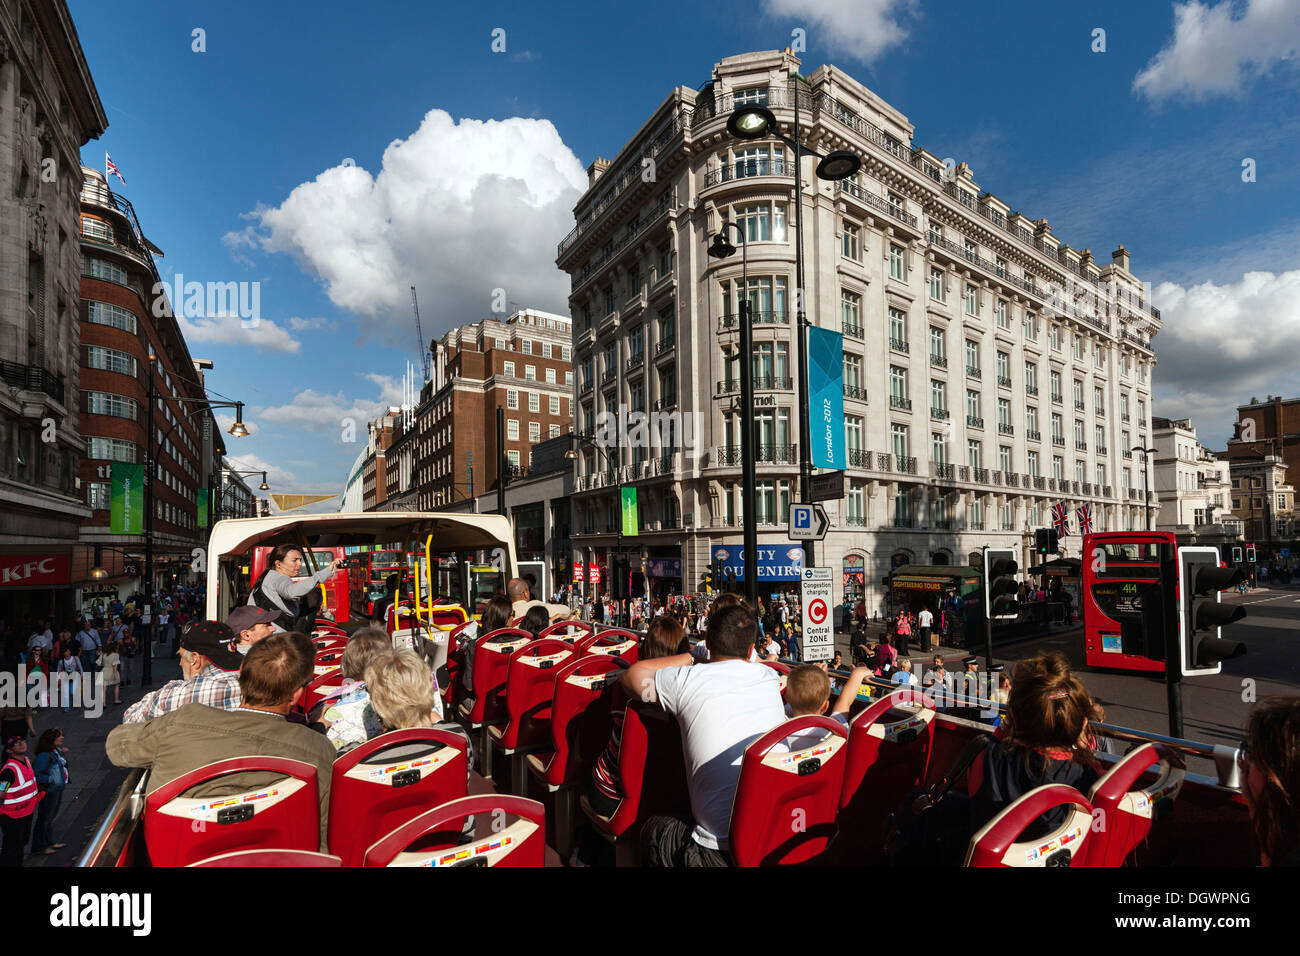 Visite de la ville, Big Bus tour bus touristiques, Oxford Street, Park Lane, Londres, Angleterre, Royaume-Uni, Europe Banque D'Images